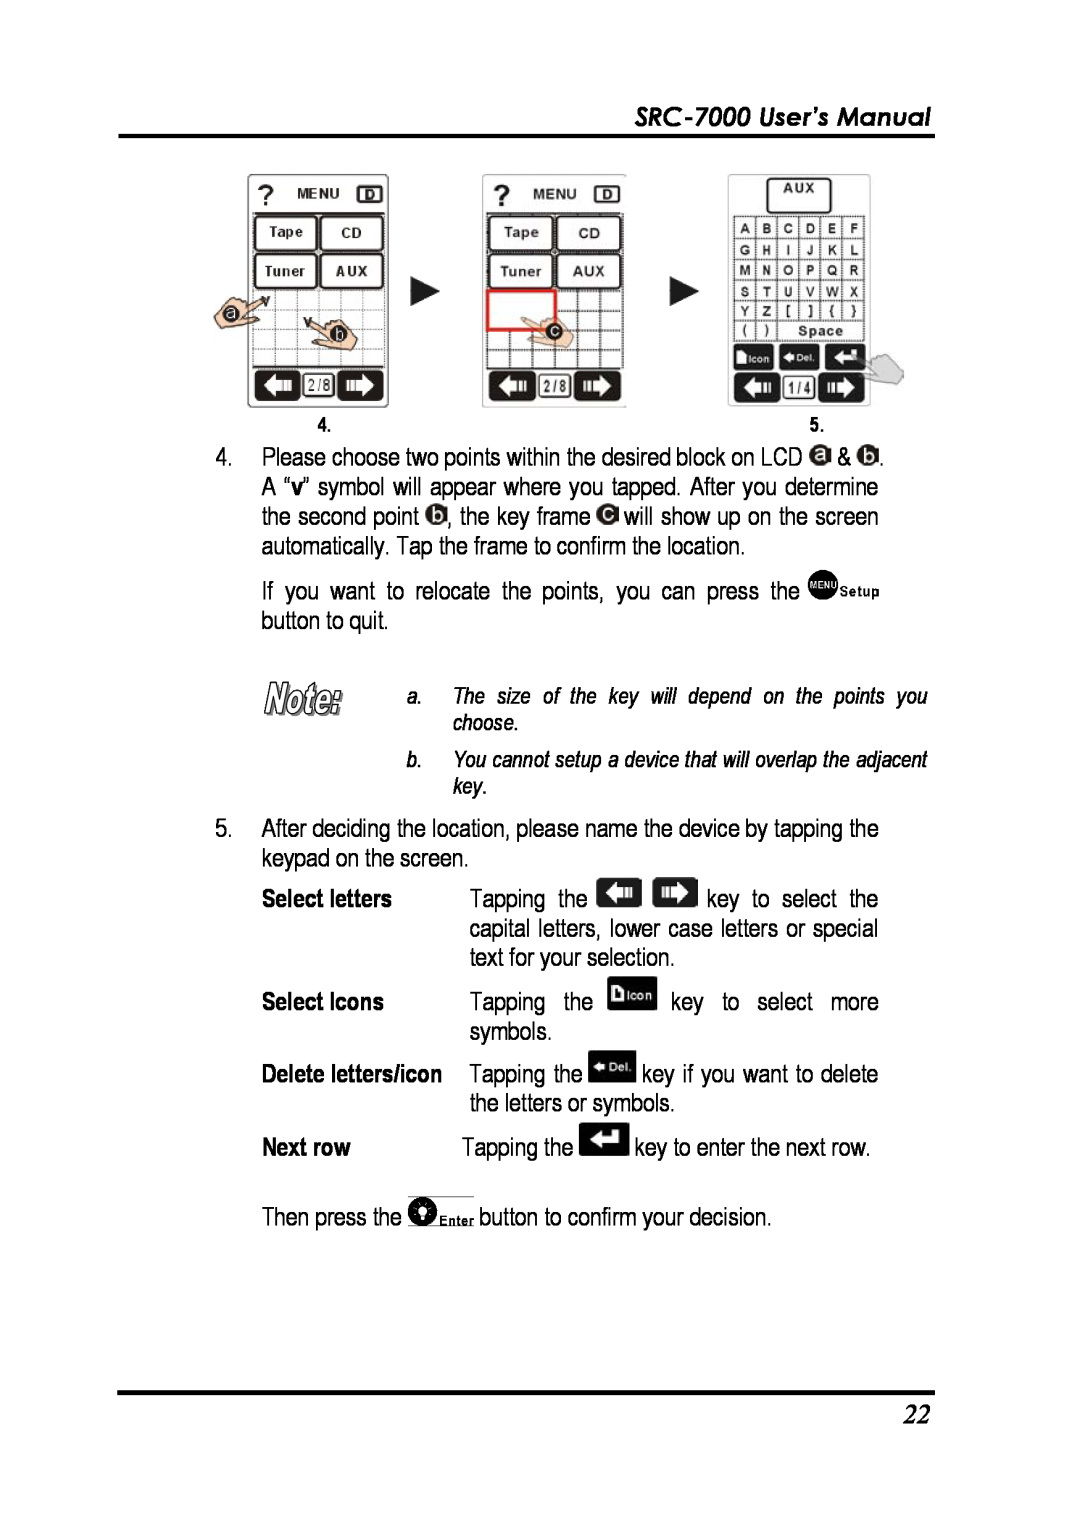 Sunwave Tech manual SRC-7000 User’s Manual, Next row 